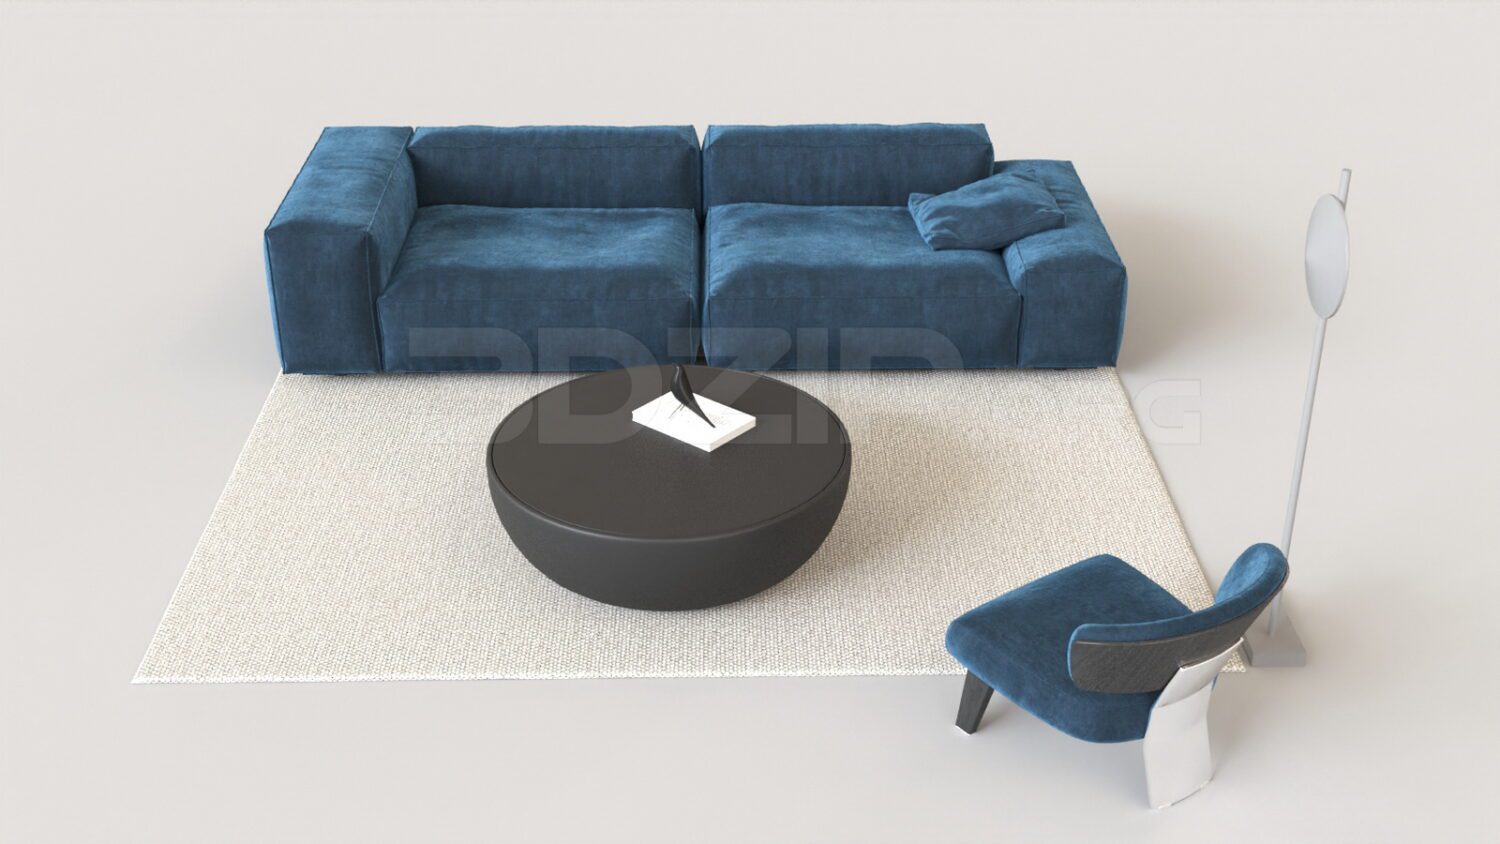 4126. Free 3D Sofa Model Download